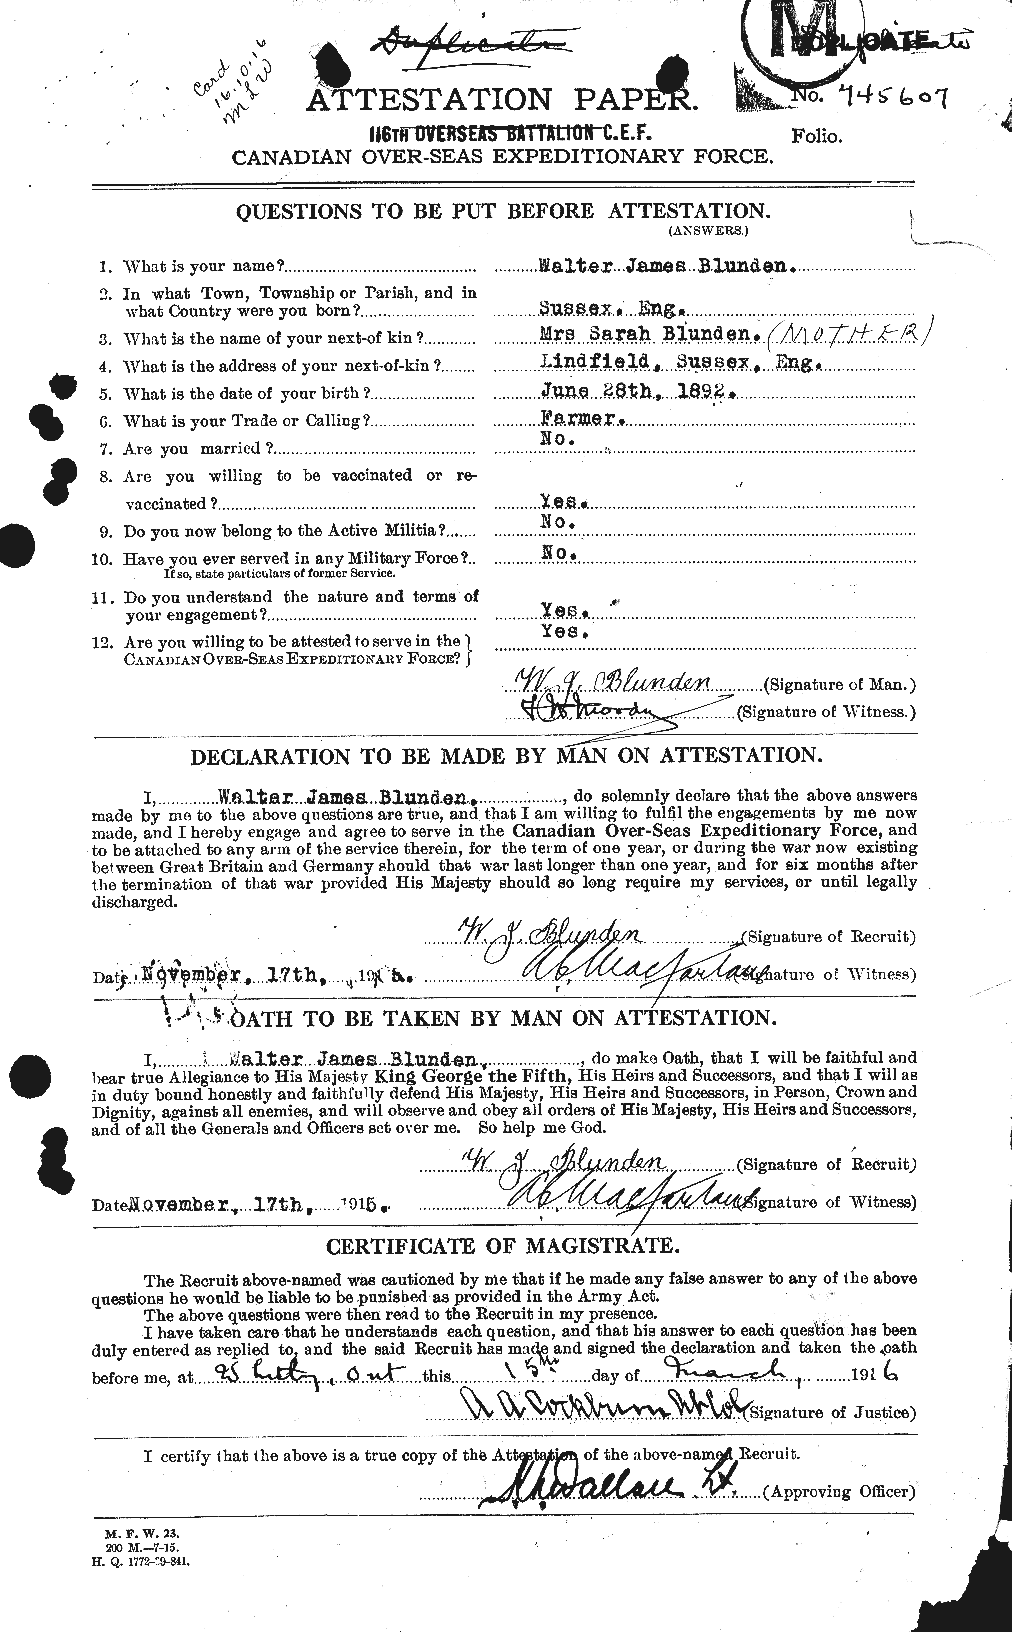 Dossiers du Personnel de la Première Guerre mondiale - CEC 247223a